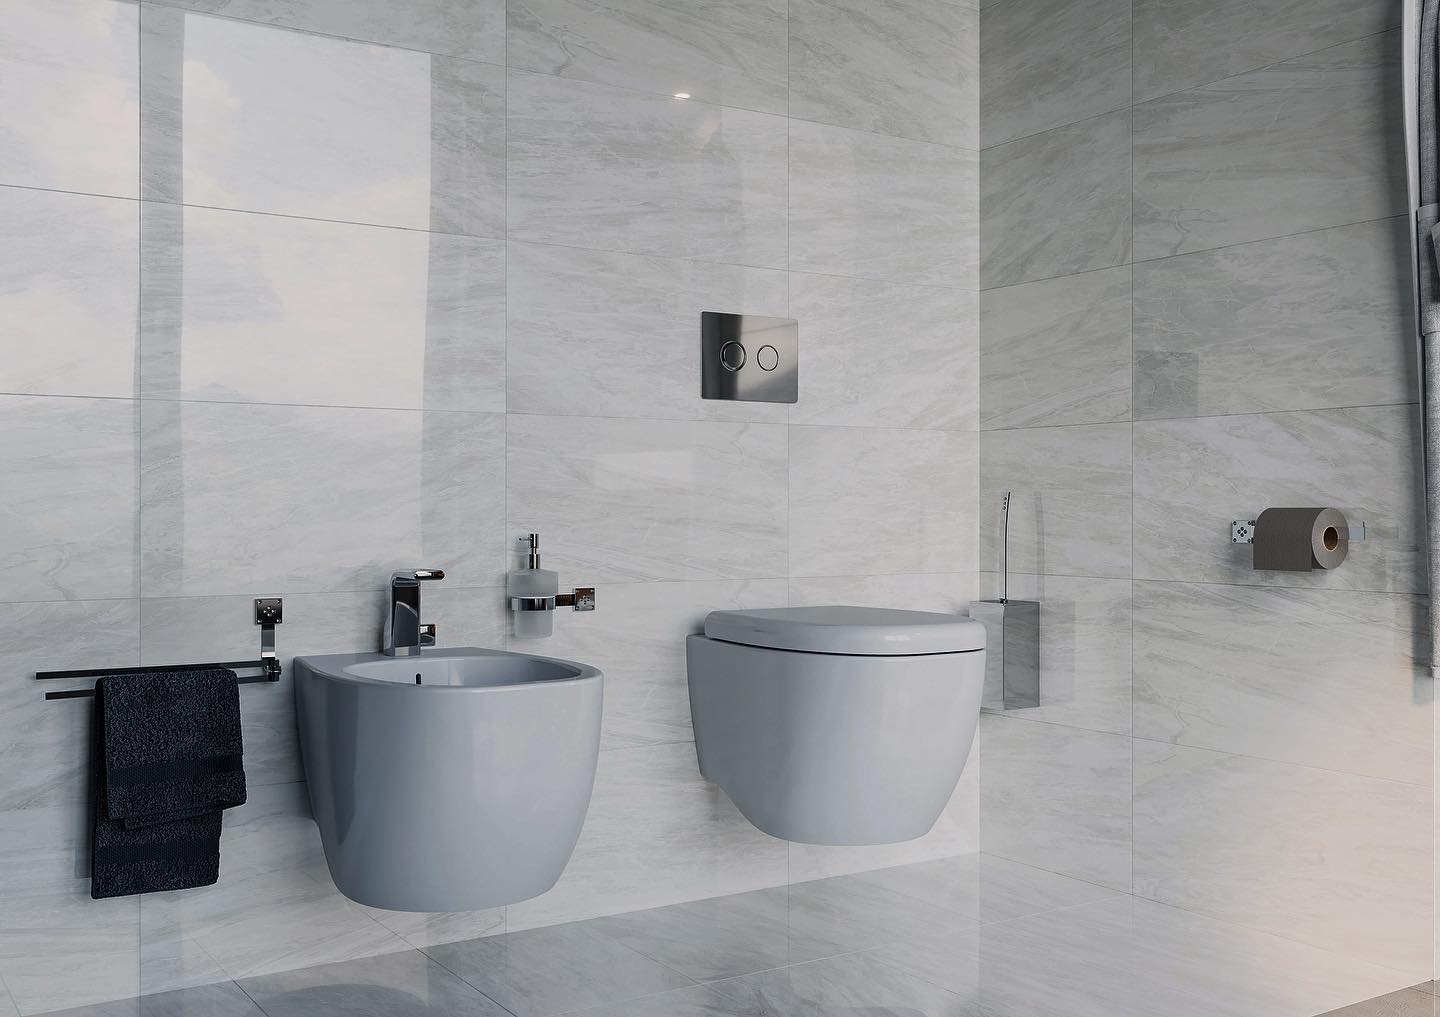 Mirella Tanzi Bathroom Design: per una stanza da bagno elegante e confortevole